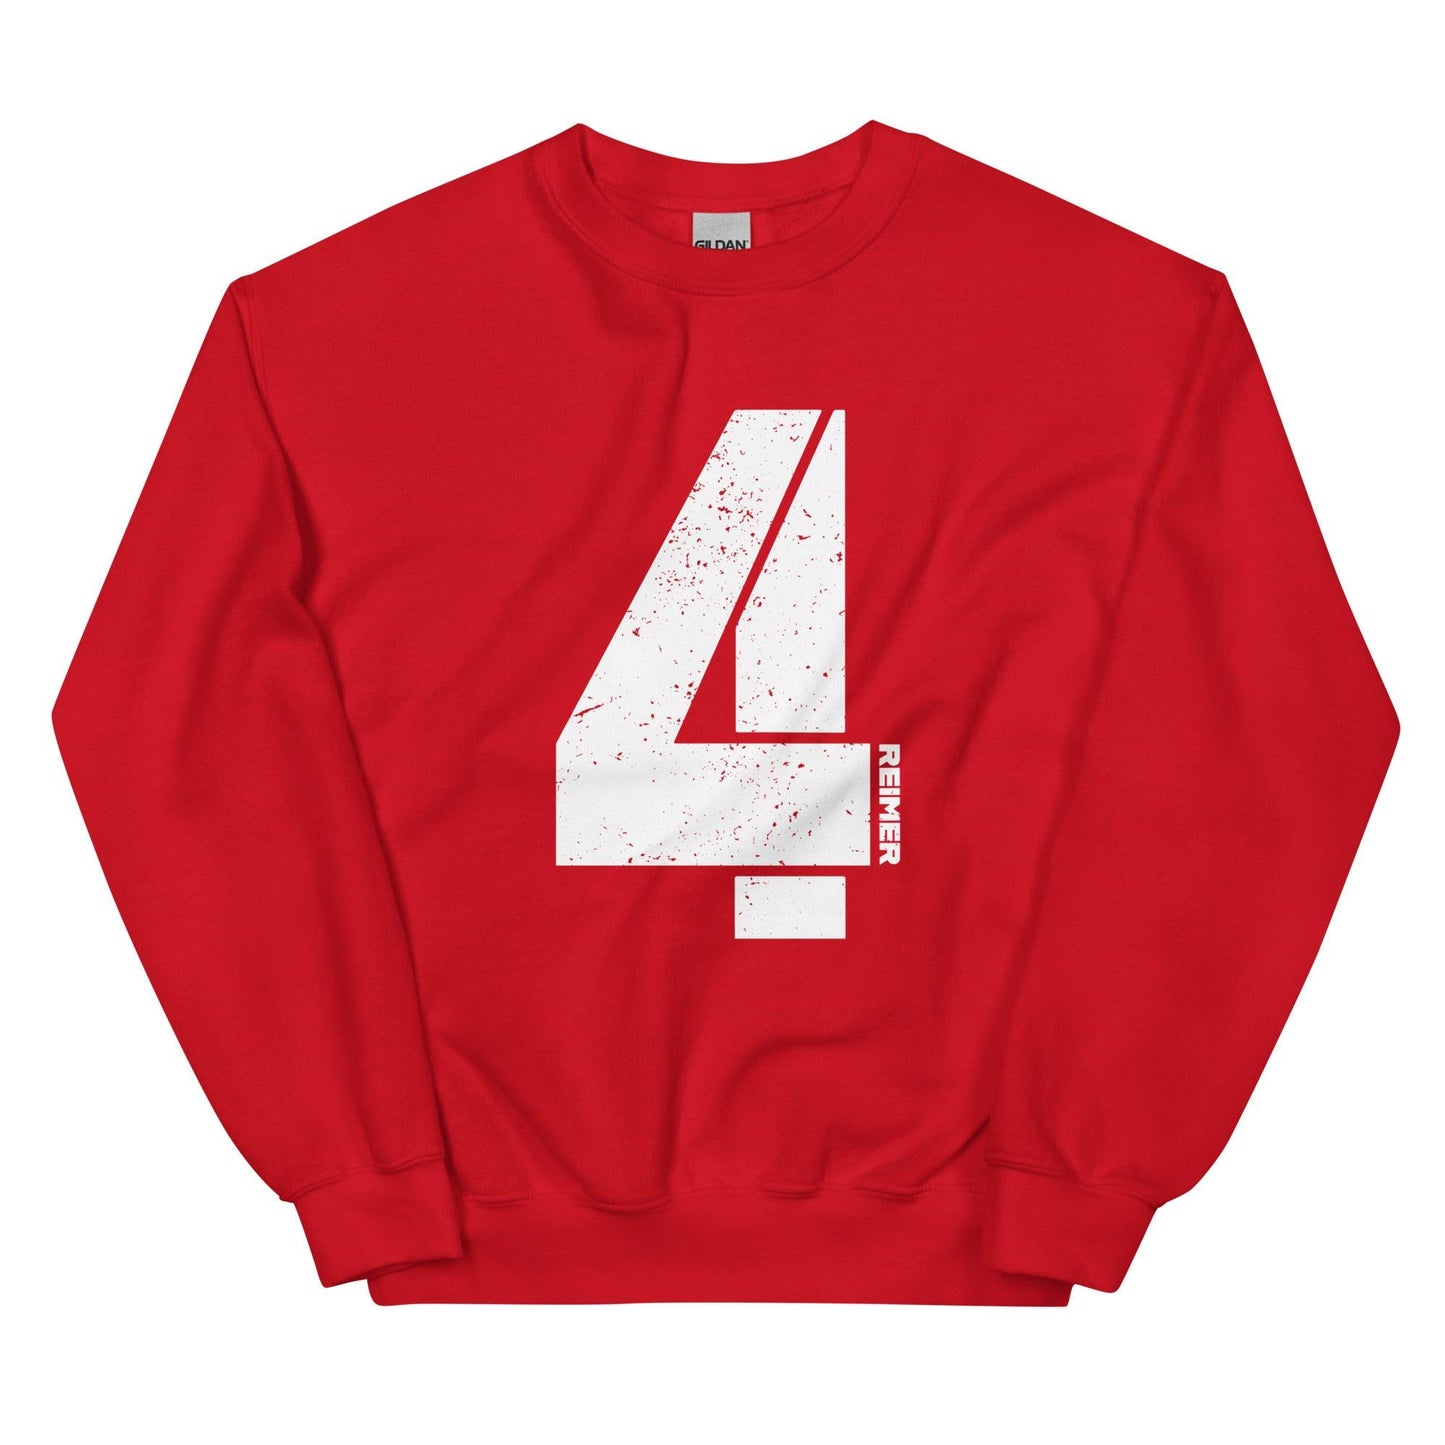 Luke Reimer "4" Crewneck Sweatshirt - Fan Arch